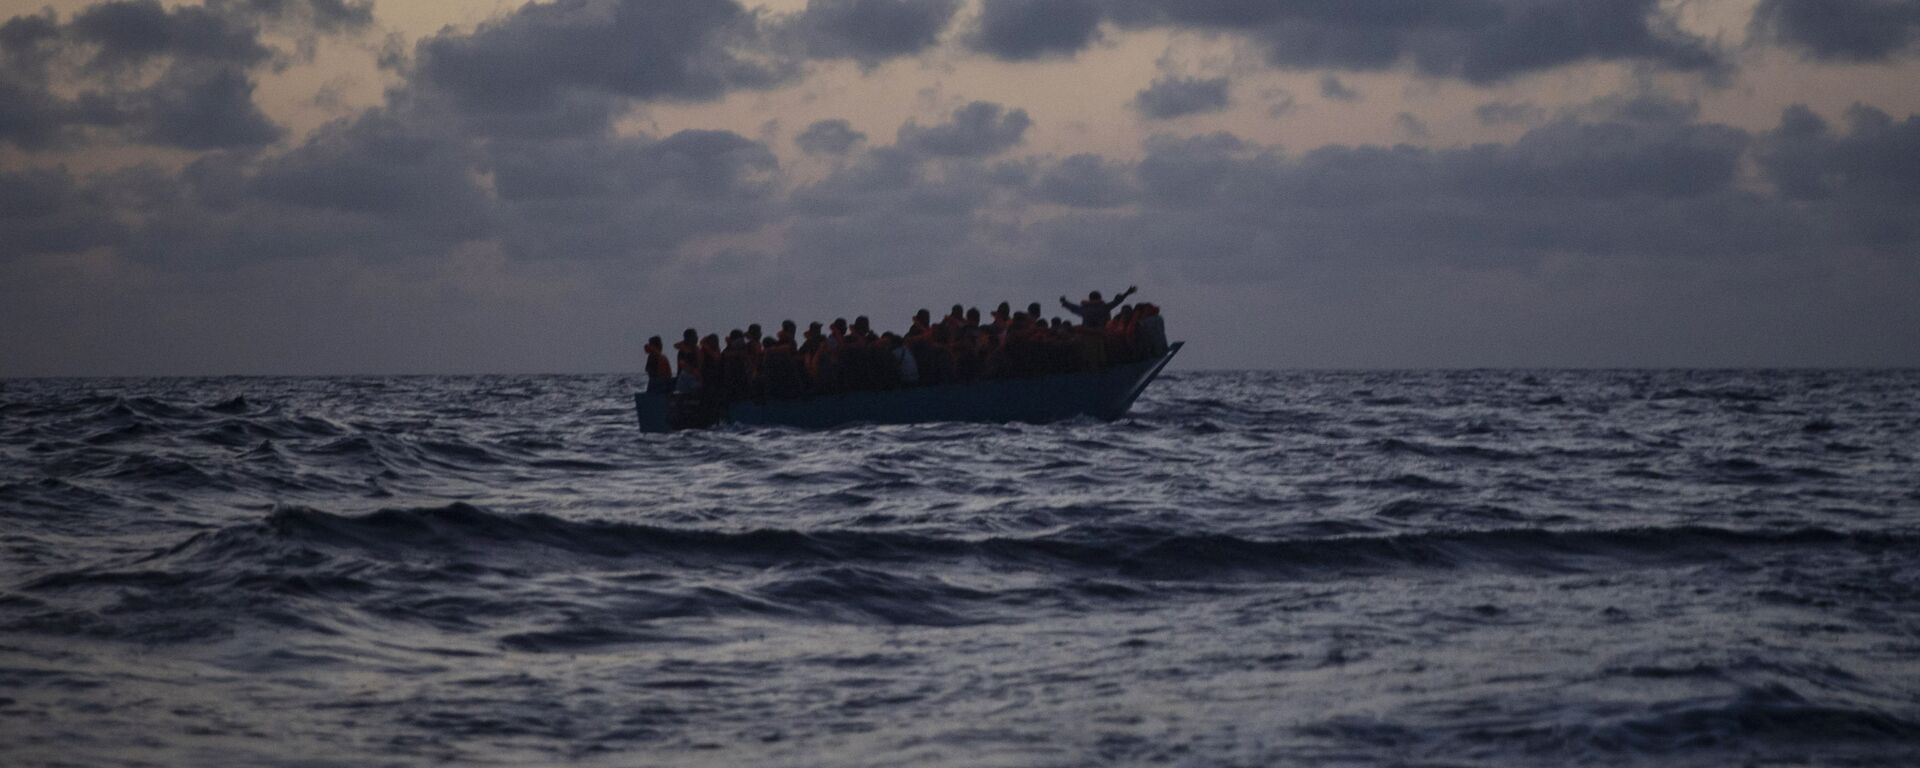 Inmigrantes esperan ser rescatados en el Mar Mediterráneo - Sputnik Mundo, 1920, 28.09.2020